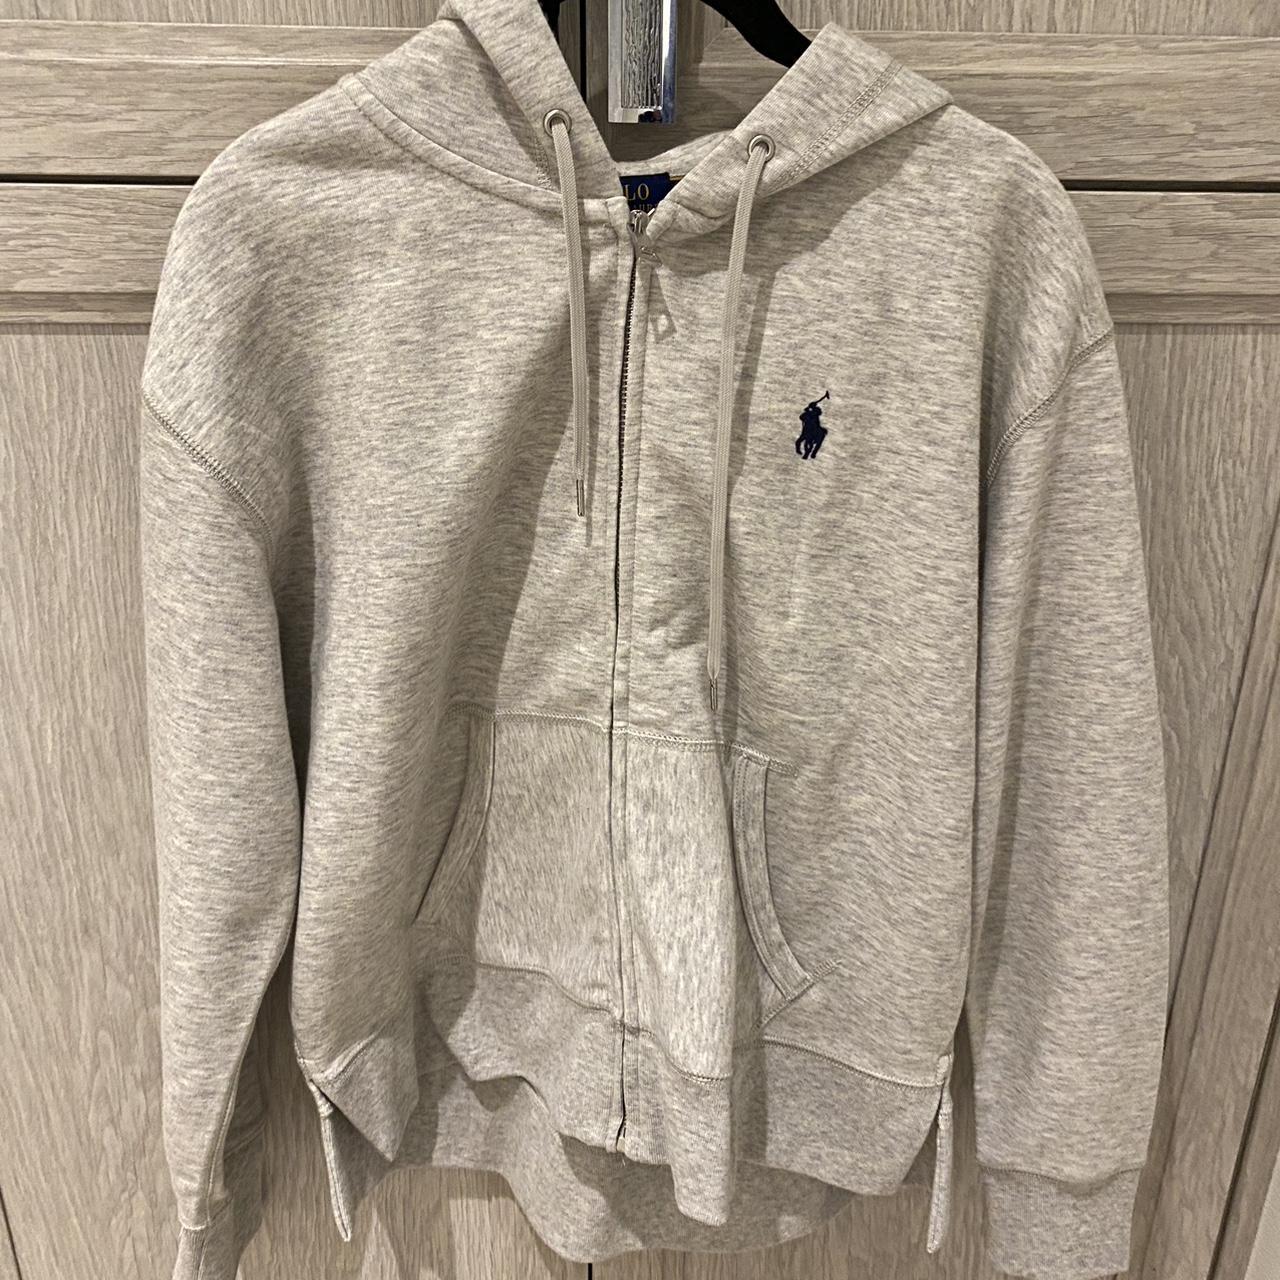 Polo Ralph Lauren light grey zip up hoodie - size... - Depop